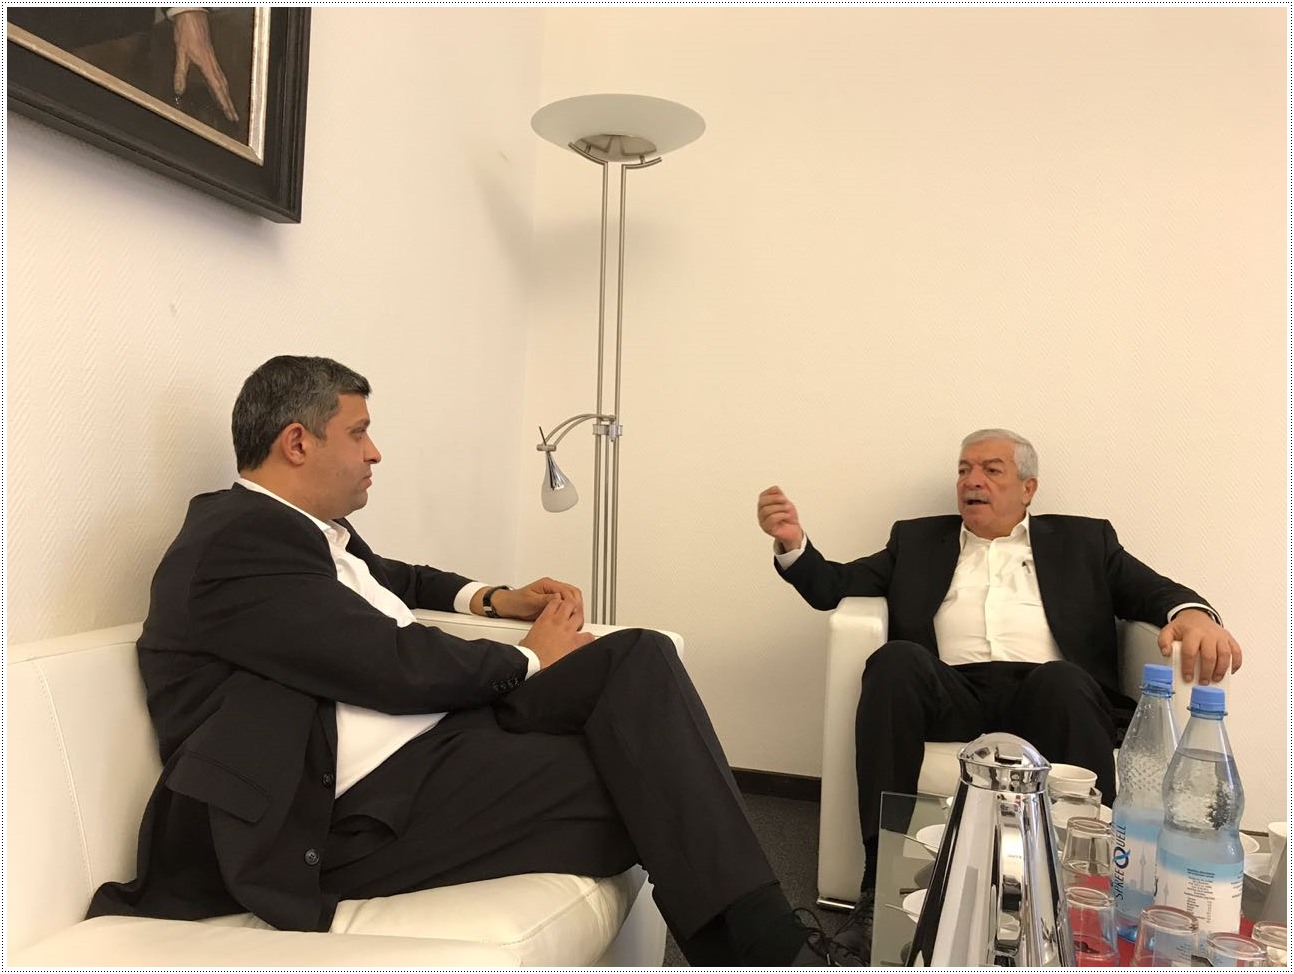 القيادي محمود العالول نائب الرئيس محمود عباس يلتقي برئيس الكتلة البرلمانية لحزب الديمقراطي الاشتراكي